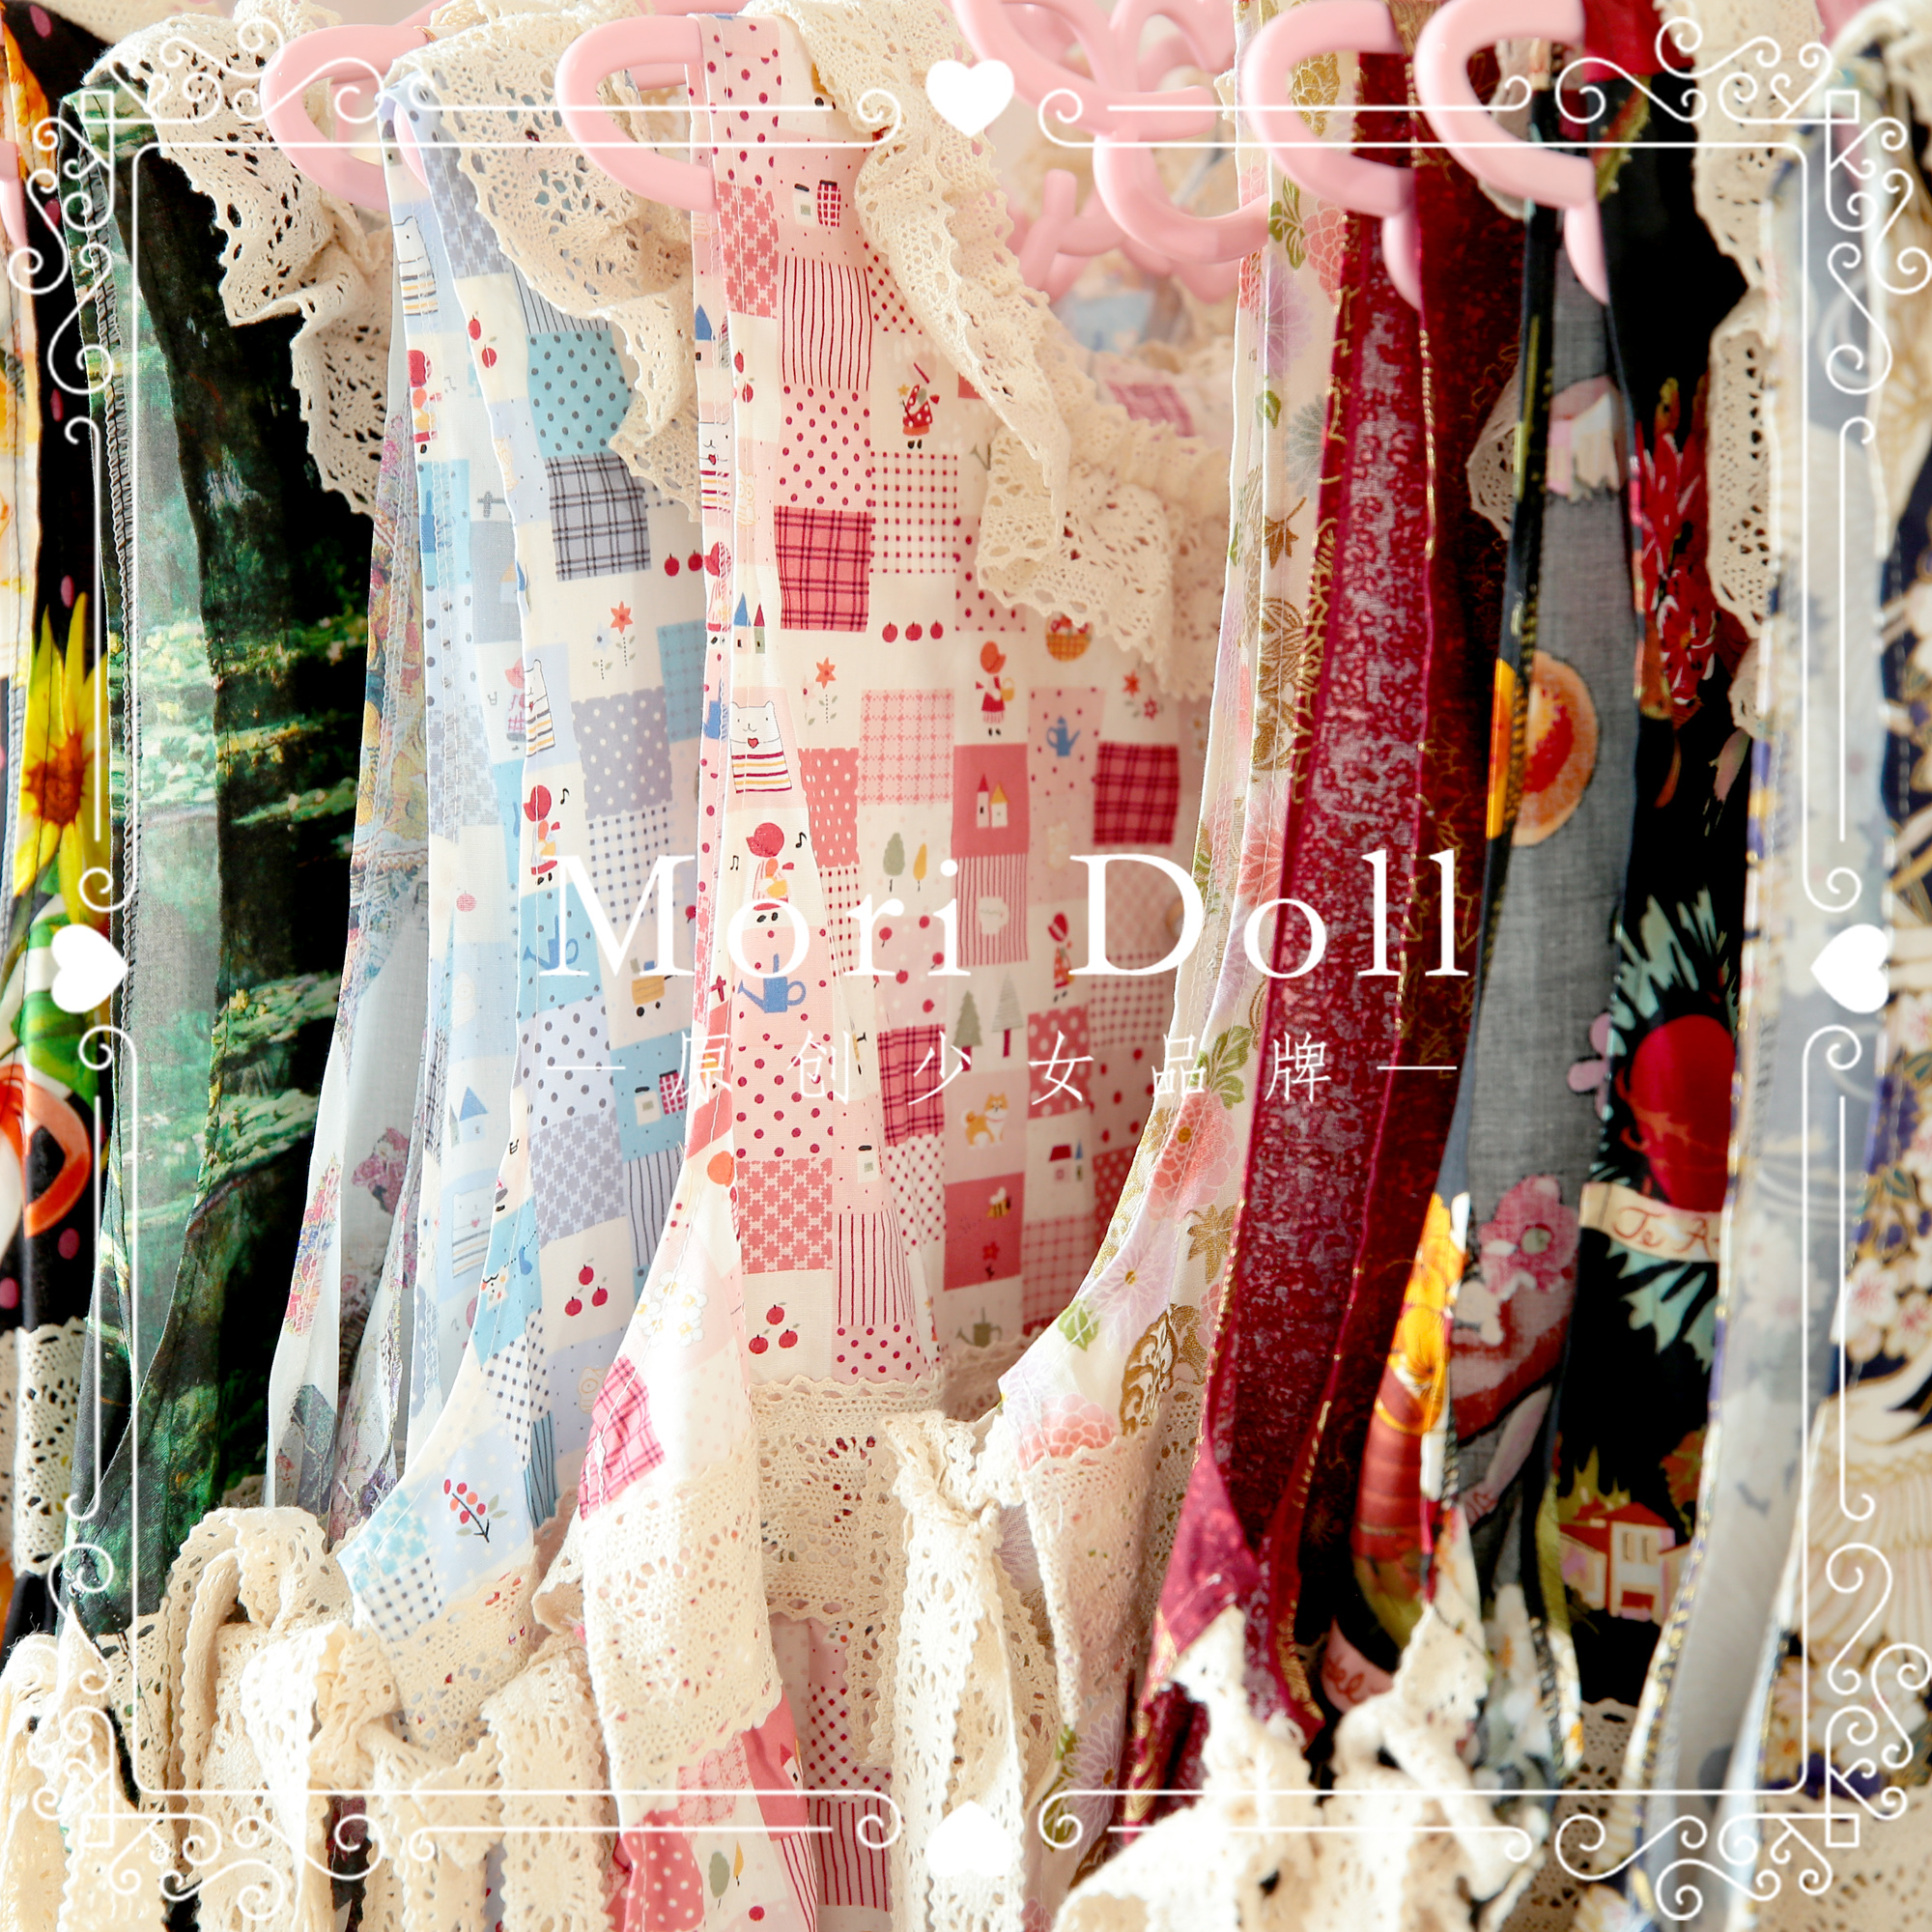 Apron Dress - MoriDoll Original Japanese Cotton Lace